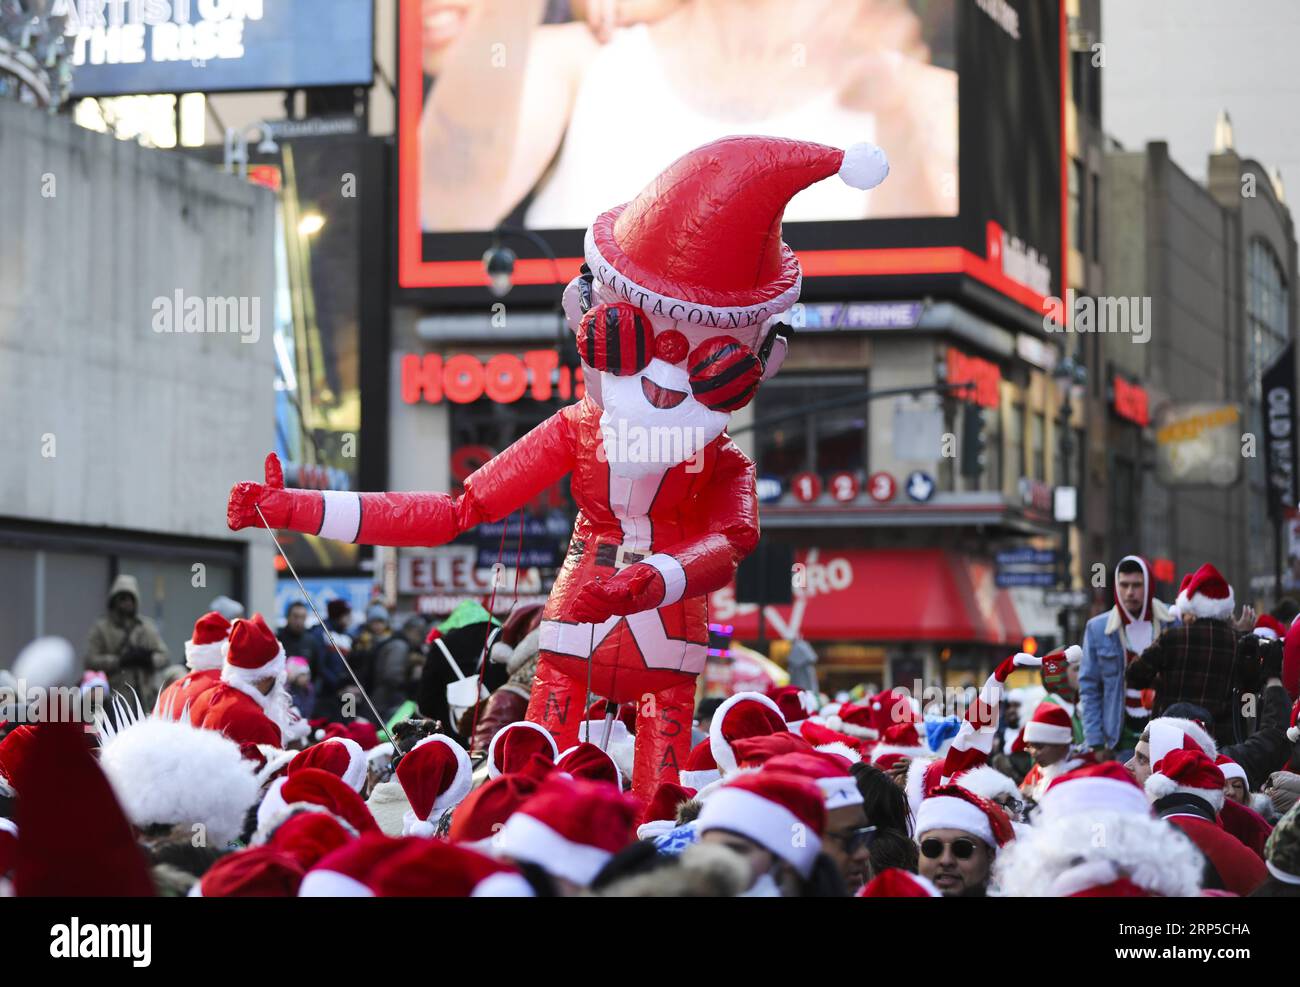 (181208) -- NEW YORK, le 8 décembre 2018 -- un Père Noël gonflable est vu lors de la SantaCon 2018 à New York, aux États-Unis, le 8 décembre 2018. Habillés en Père Noël ou en costumes festifs, des centaines de personnes ont participé à la SantaCon 2018 samedi, profitant de l'atmosphère de Noël et amassant des fonds pour la charité. US-NEW YORK-2018 SANTACON WangxYing PUBLICATIONxNOTxINxCHN Banque D'Images